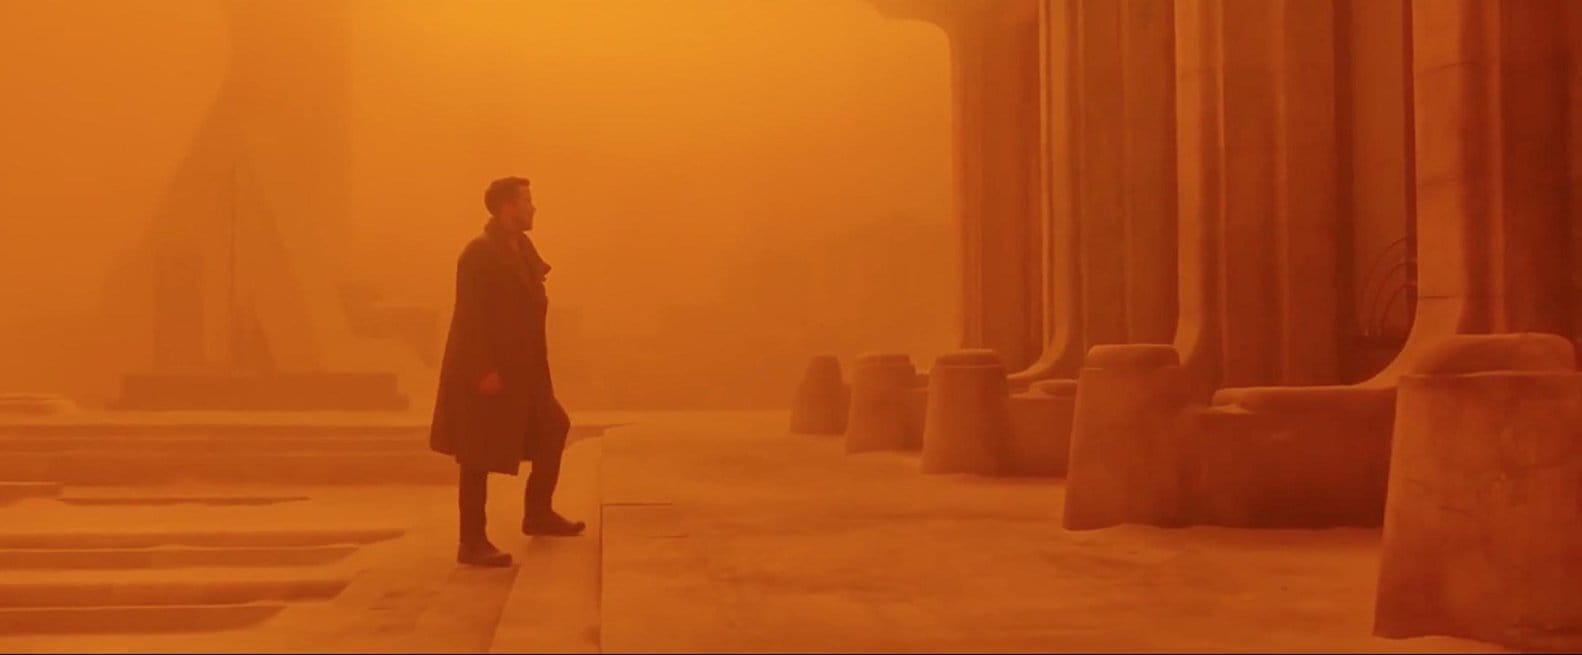 Em Blade Runner 2049, a arquitetura é amplamente substituída por um cenário monocromático. Aqui, Las Vegas é ALARANJADA. Imagem © 2017 Warner Bros. Entertainment Inc. 